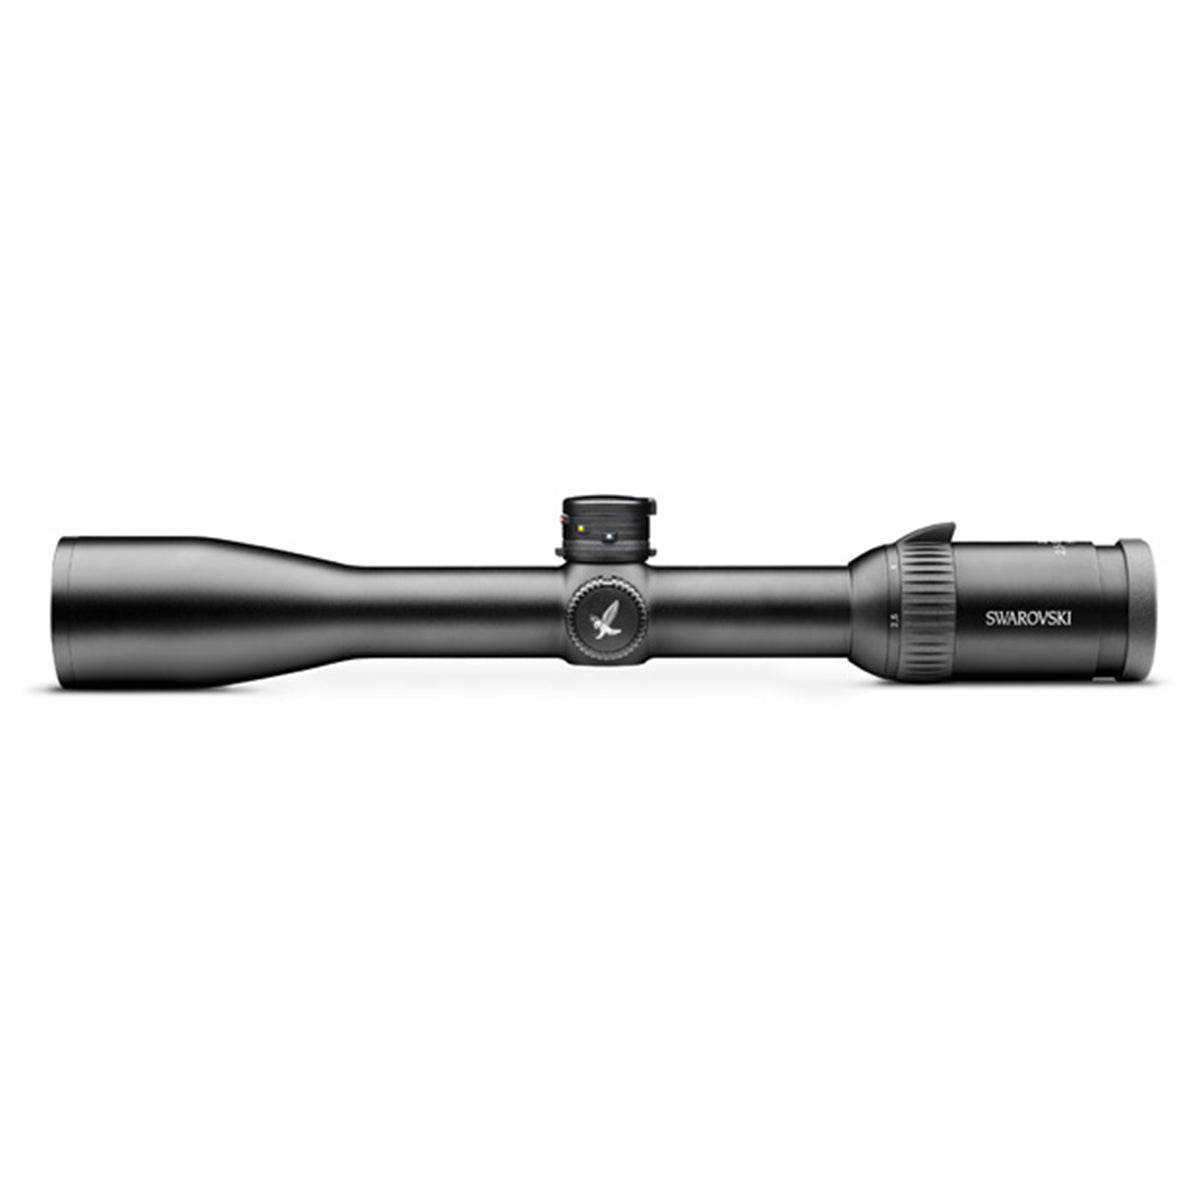 Swarovski Z6 2.5-15x44 BT Plex Riflescope by Swarovski Optik | Optics - goHUNT Shop